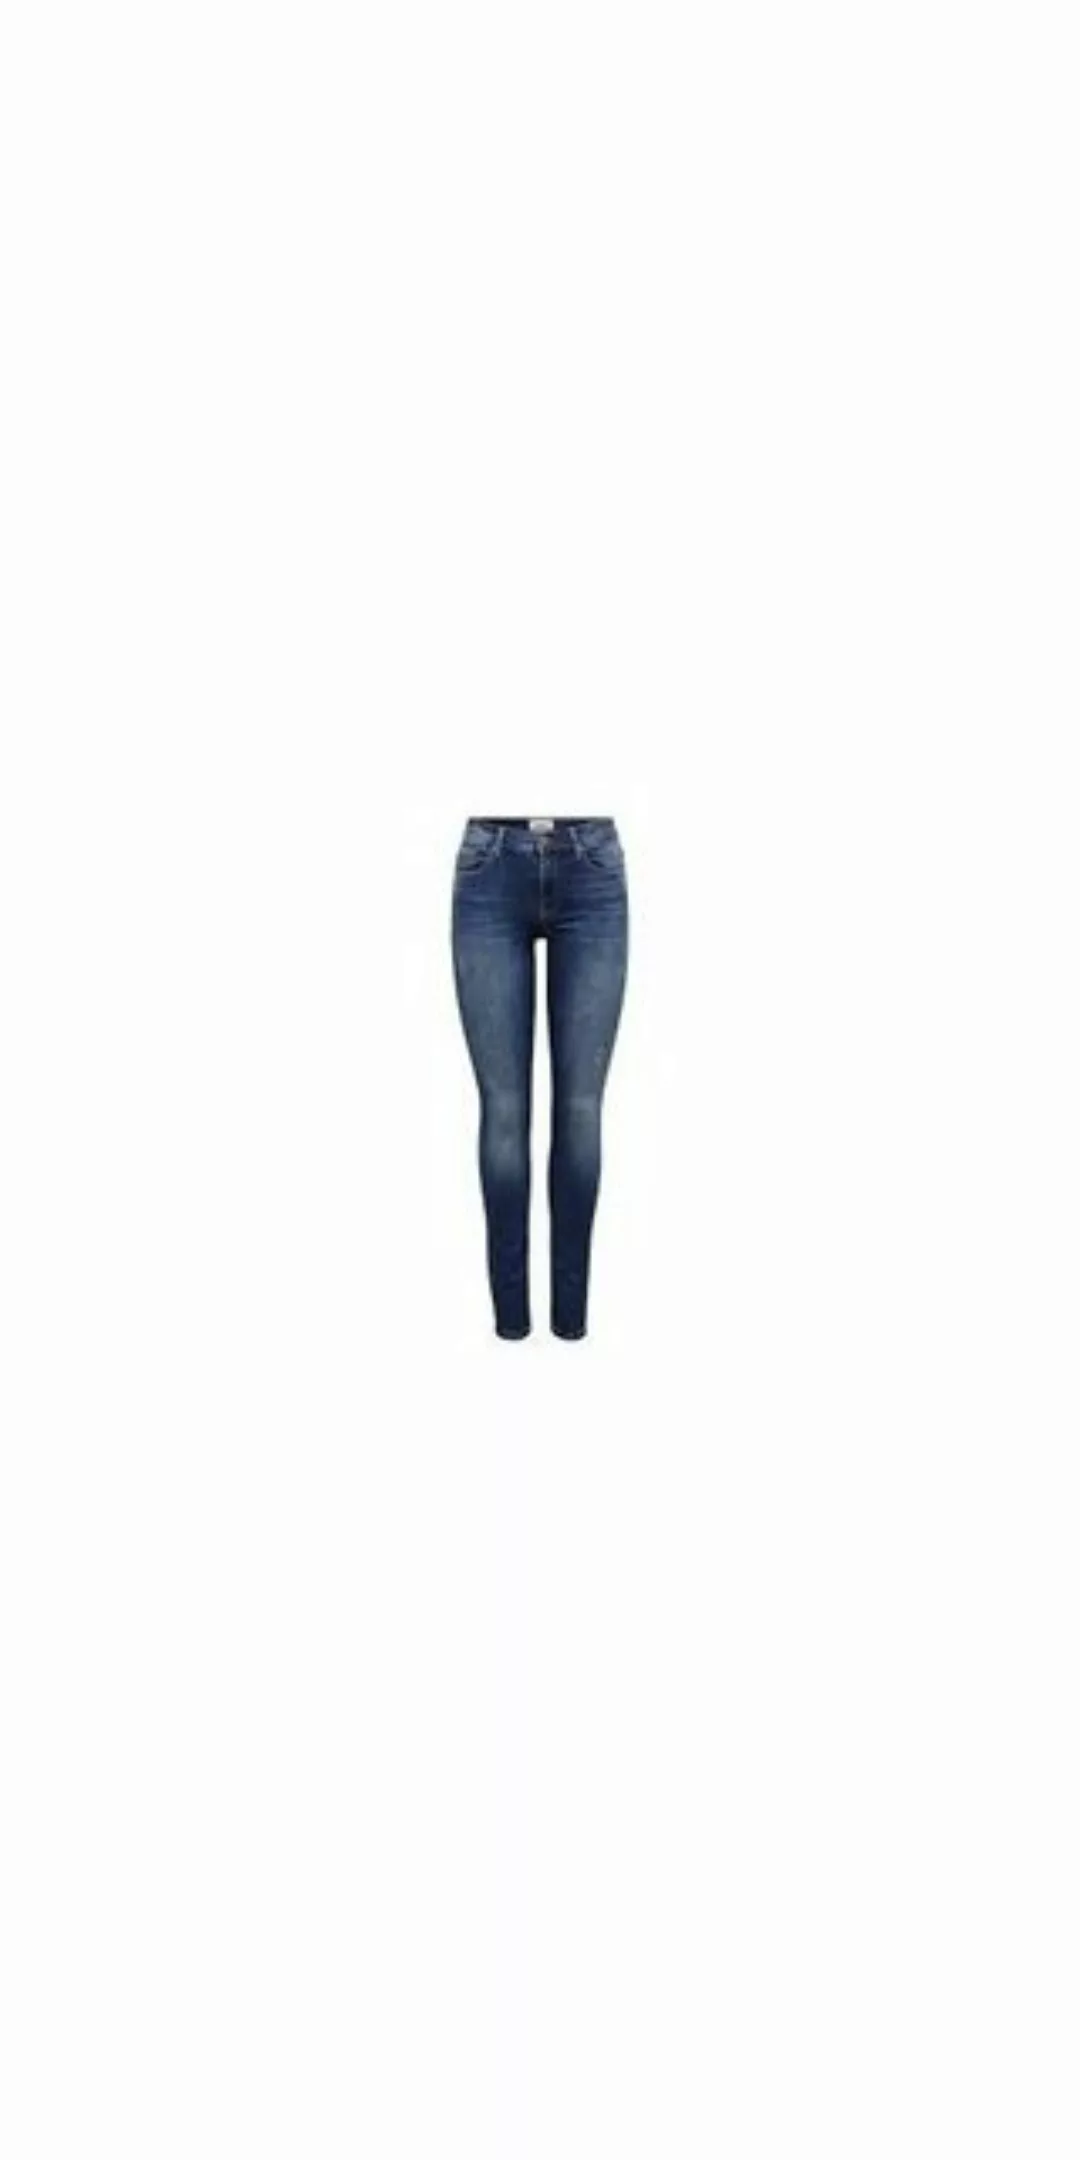 Only Damen Jeans onlSHAPE REG SK DNM JEANS REA4488 - Skinny Fit - Blau - Da günstig online kaufen